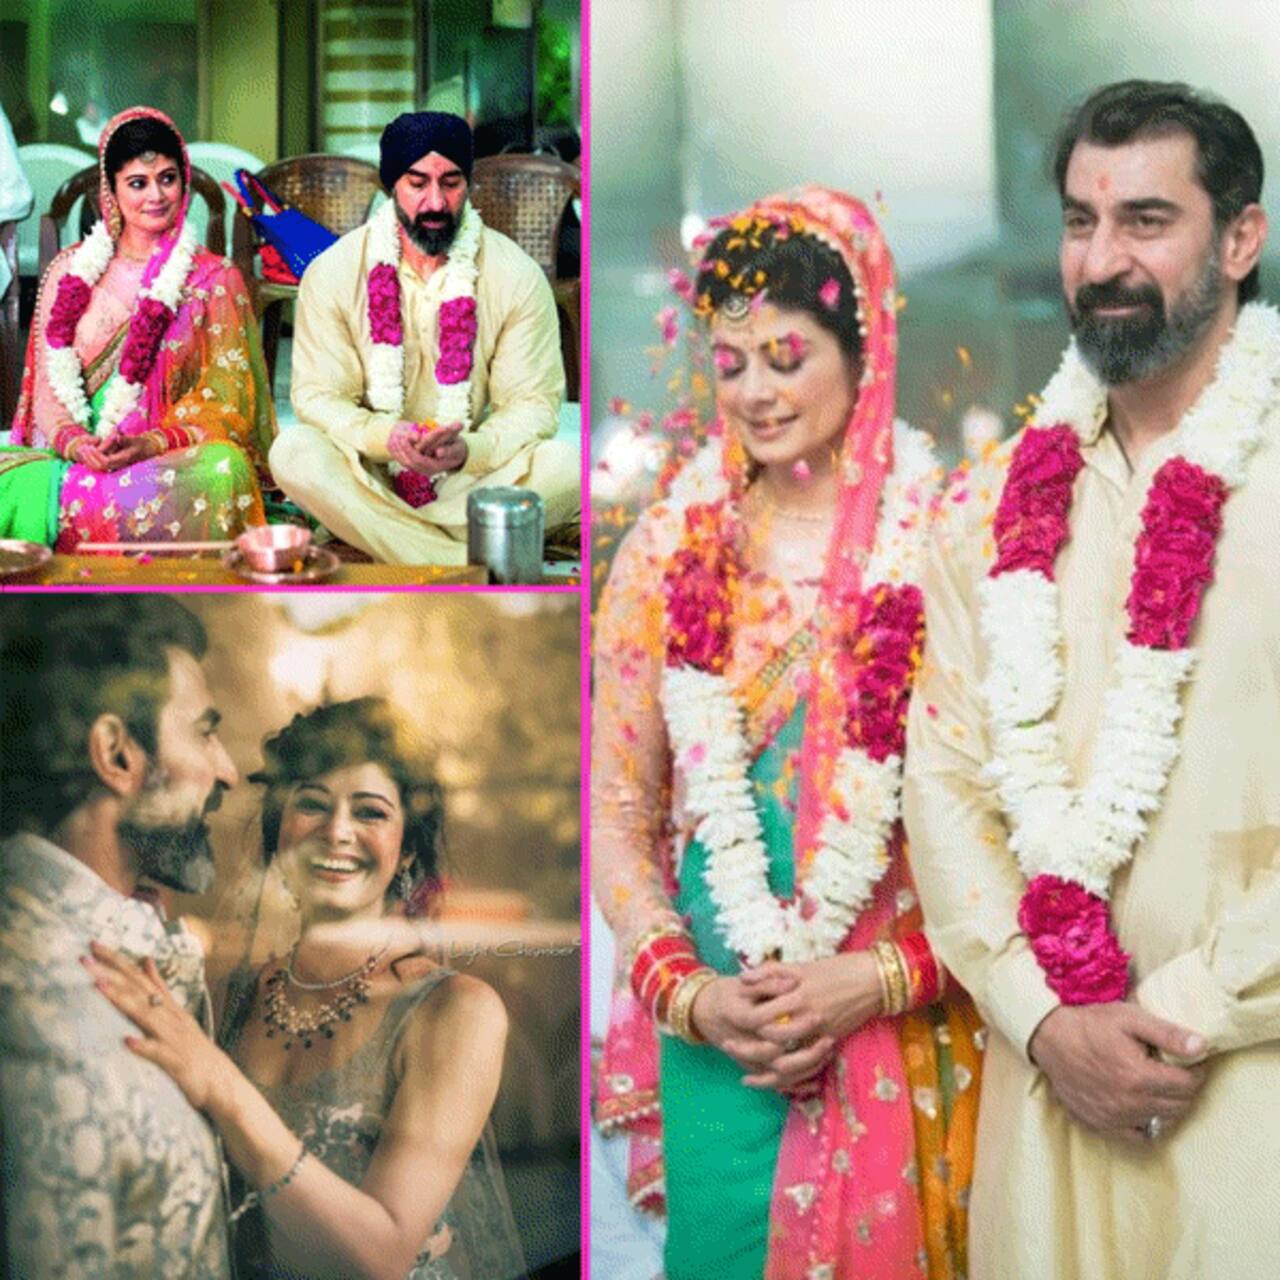 किसी खूबसूरत सपने से कम नहीं हैं पूजा बत्रा (Pooja Batra) और नवाब शाह (Nawab Shah) की शादी की तस्वीरें